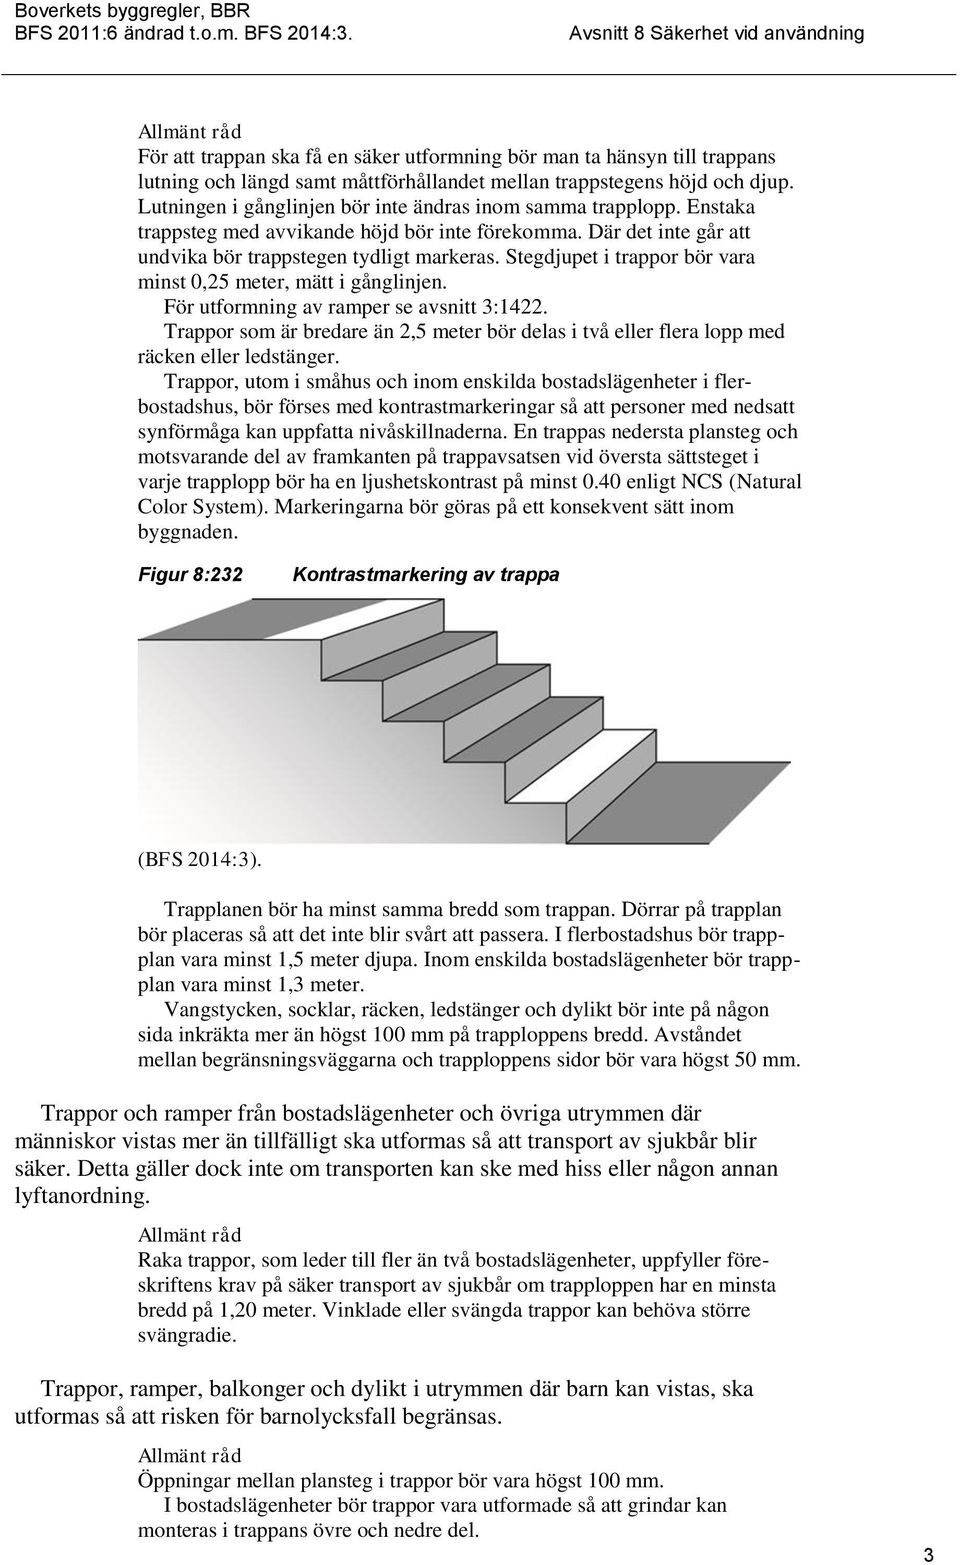 Stegdjupet i trappor bör vara minst 0,25 meter, mätt i gånglinjen. För utformning av ramper se avsnitt 3:1422.